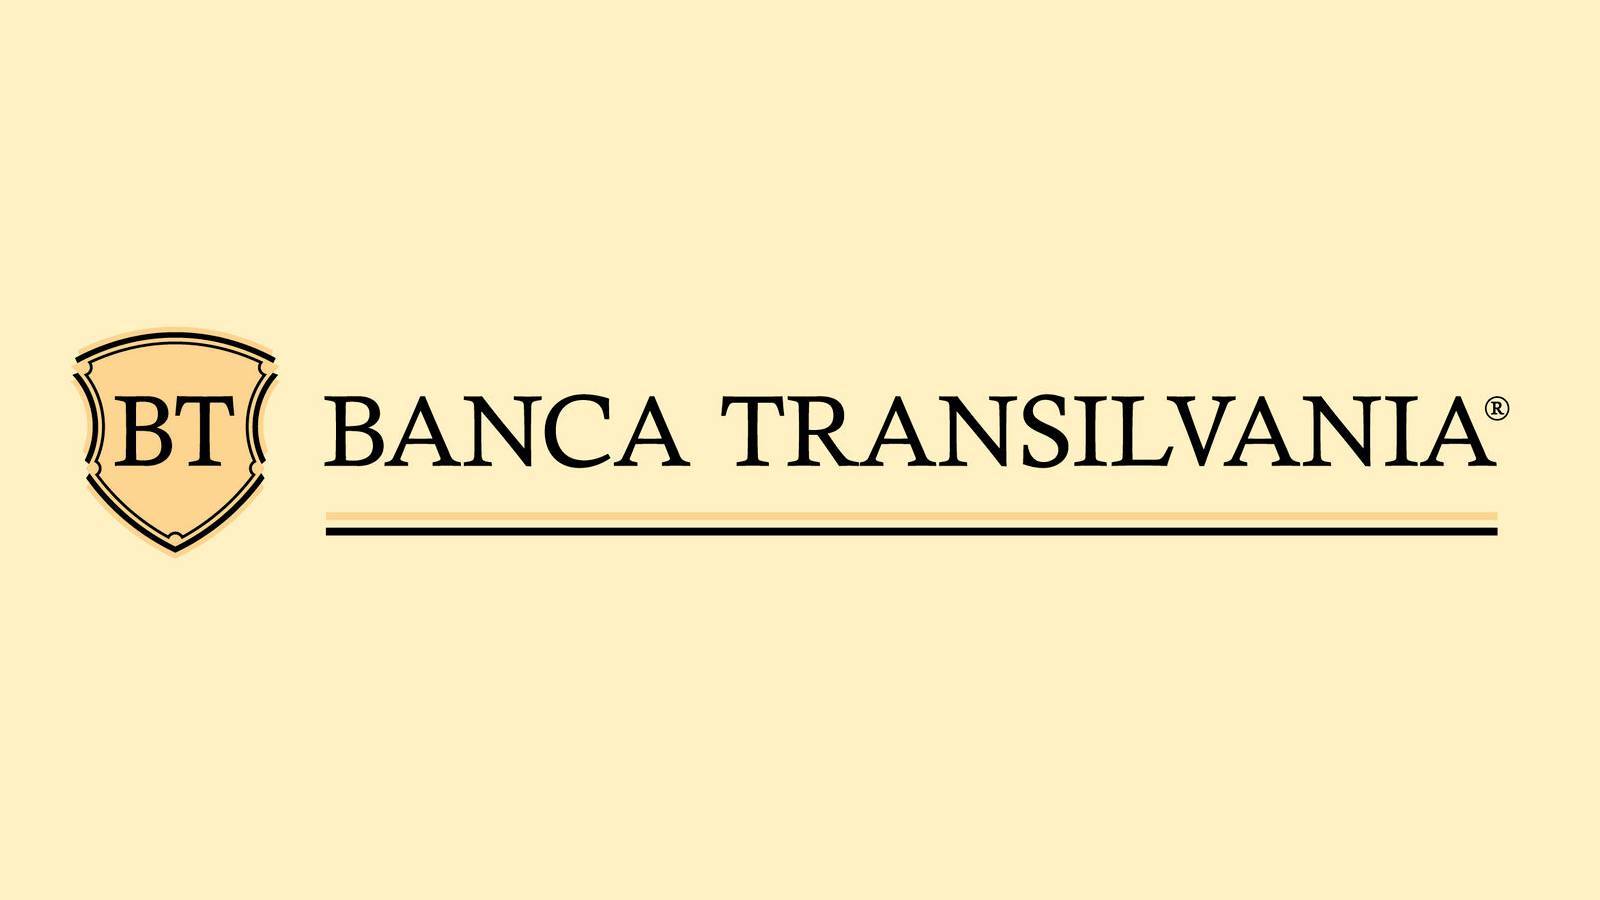 Banca Transilvania uudenvuoden ohjelmatoimistot